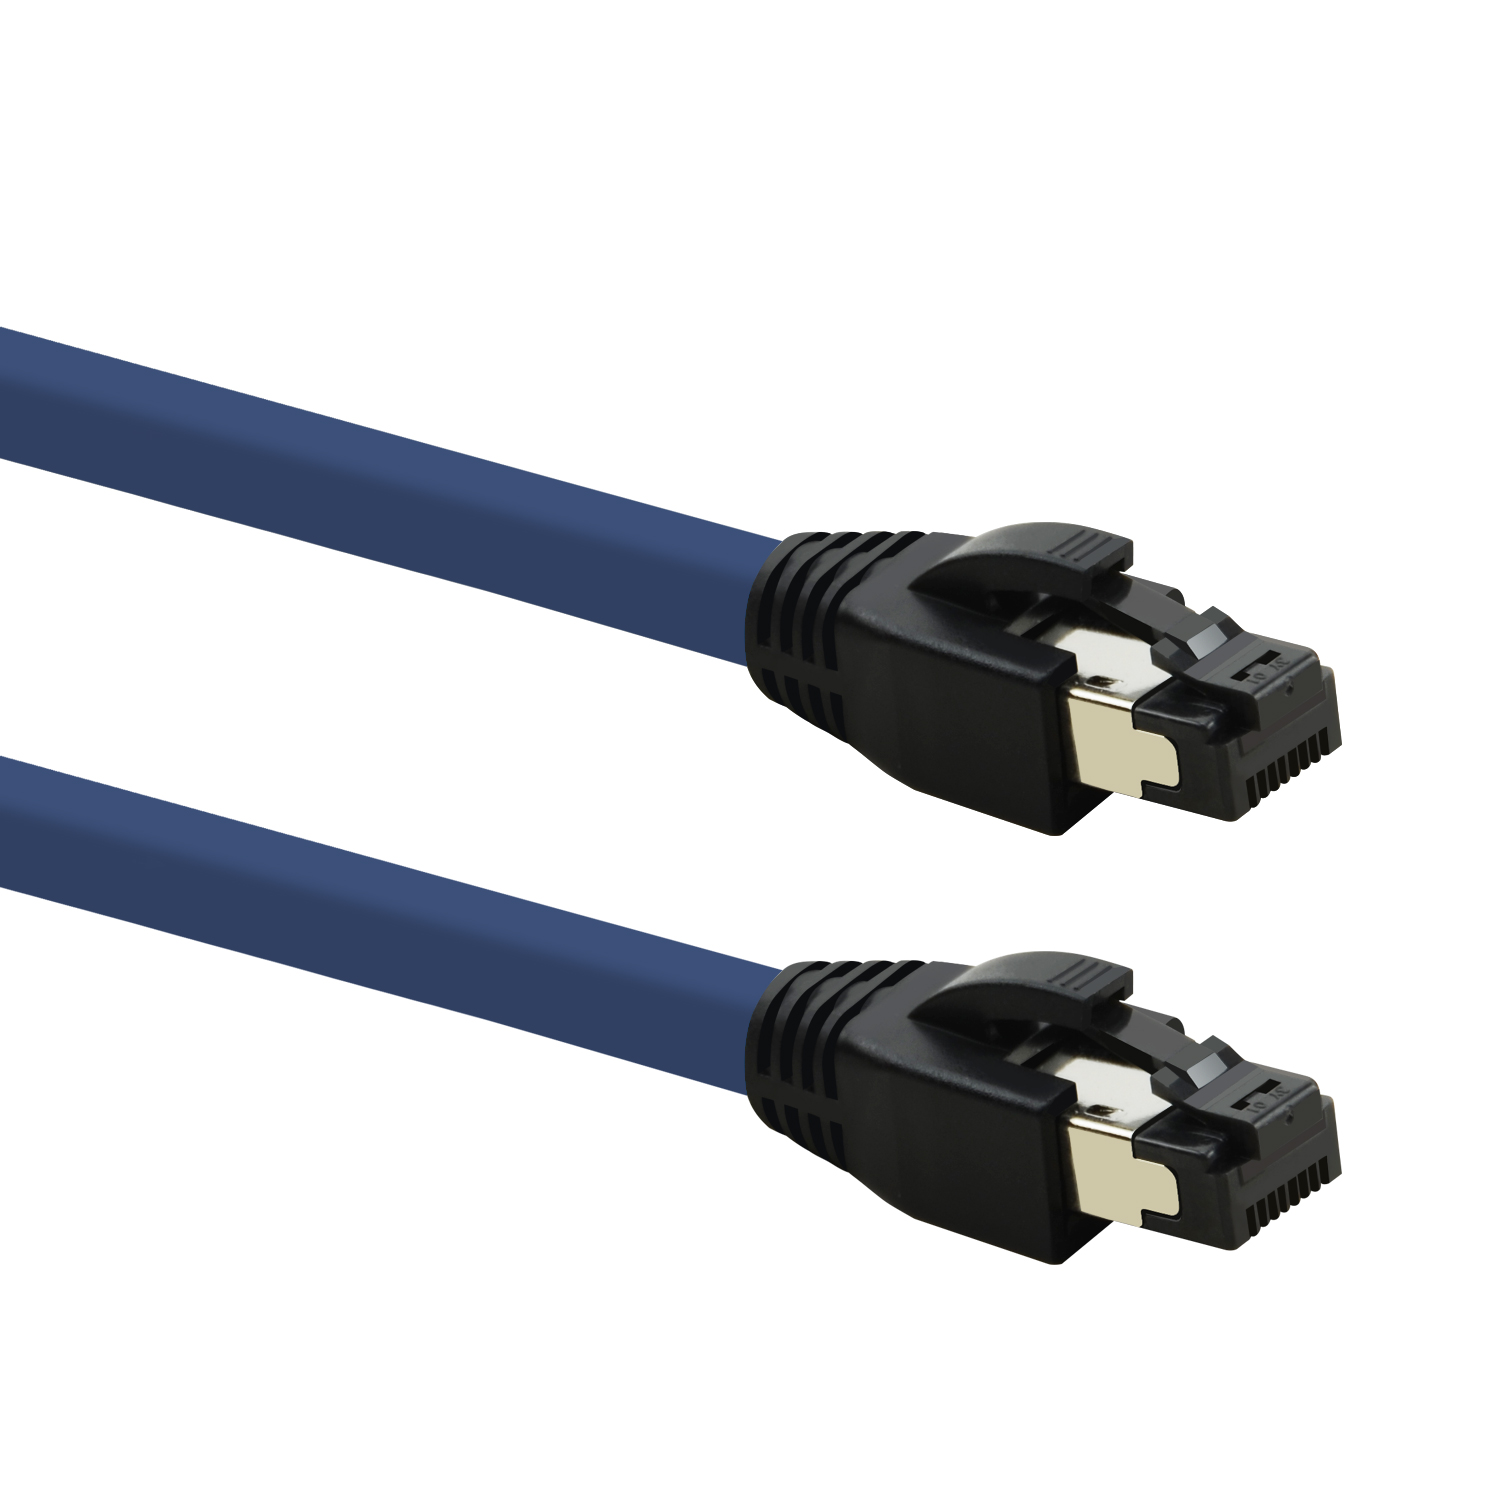 blau, m Netzwerkkabel 10m Patchkabel S/FTP Netzwerkkabel, 40 TPFNET 10 GBit, /